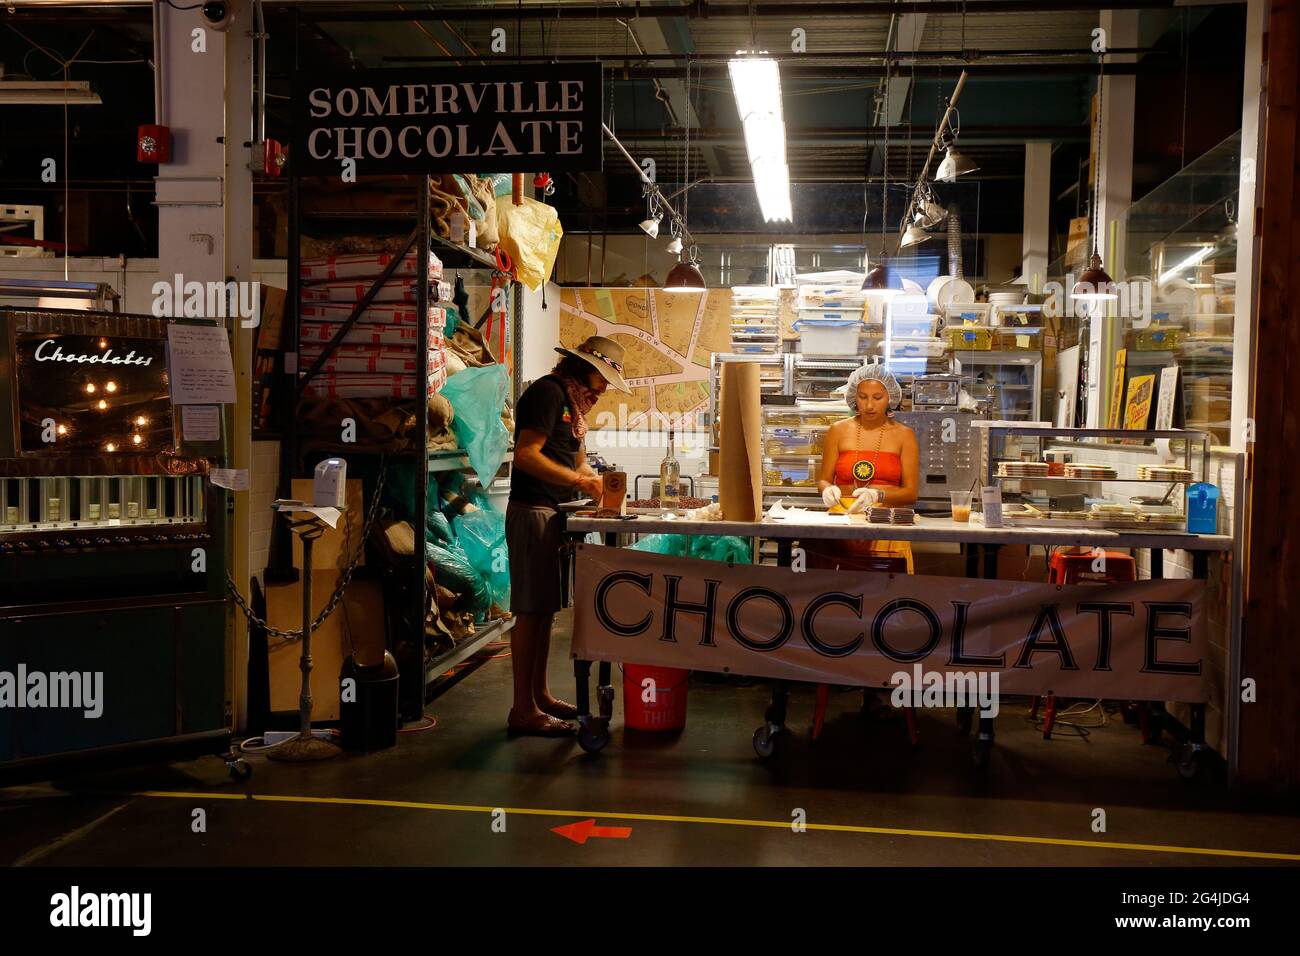 Mateo et Wasi de Prophecy Chocolate partage de l'espace avec Somerville Chocolate à Aeronaute Brewing Company, 14 Tyler St, Somerville, ma. Banque D'Images